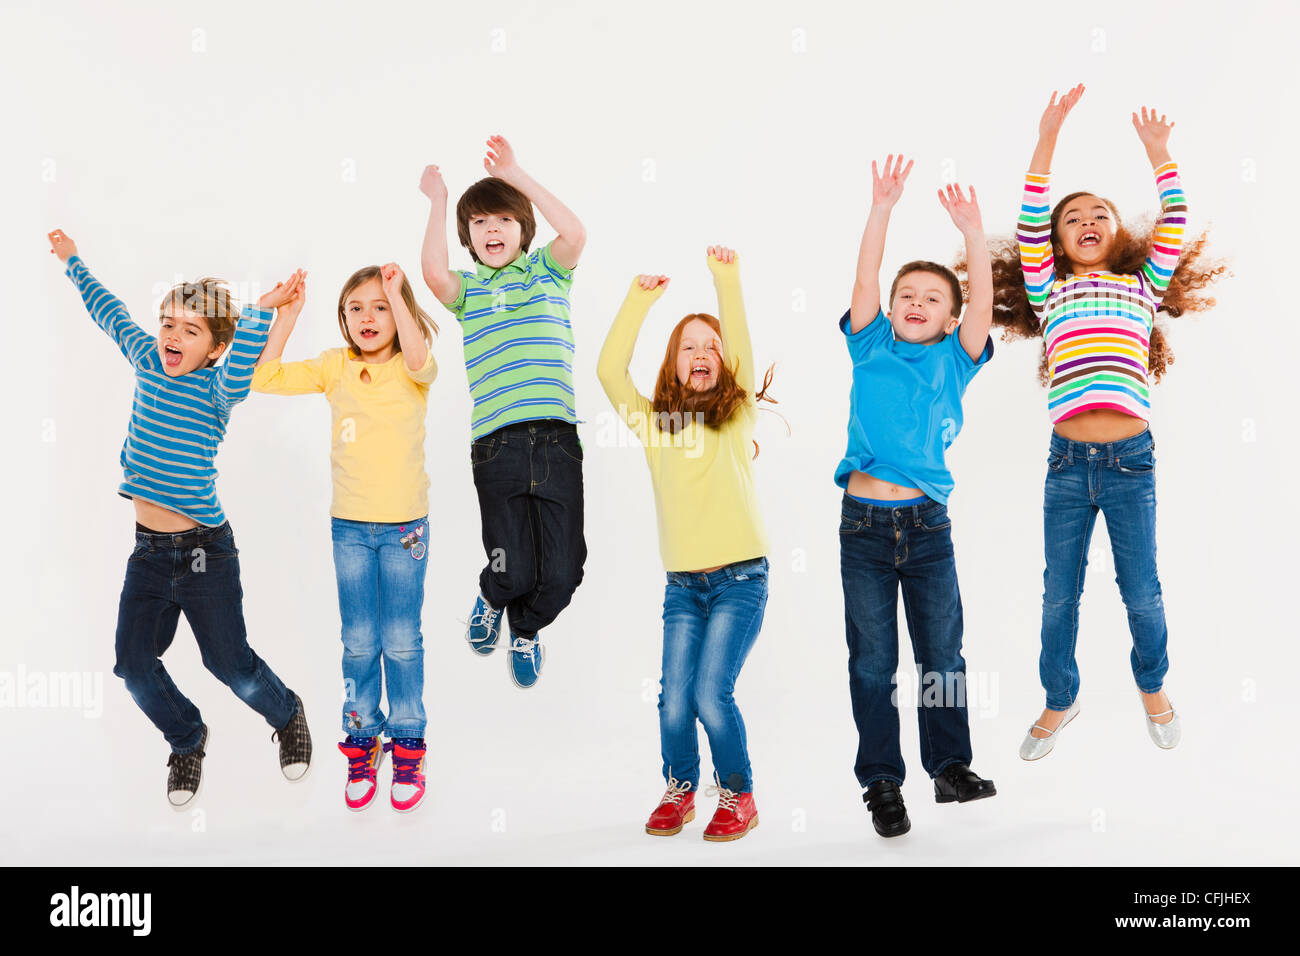 Children jumping Stock Photo